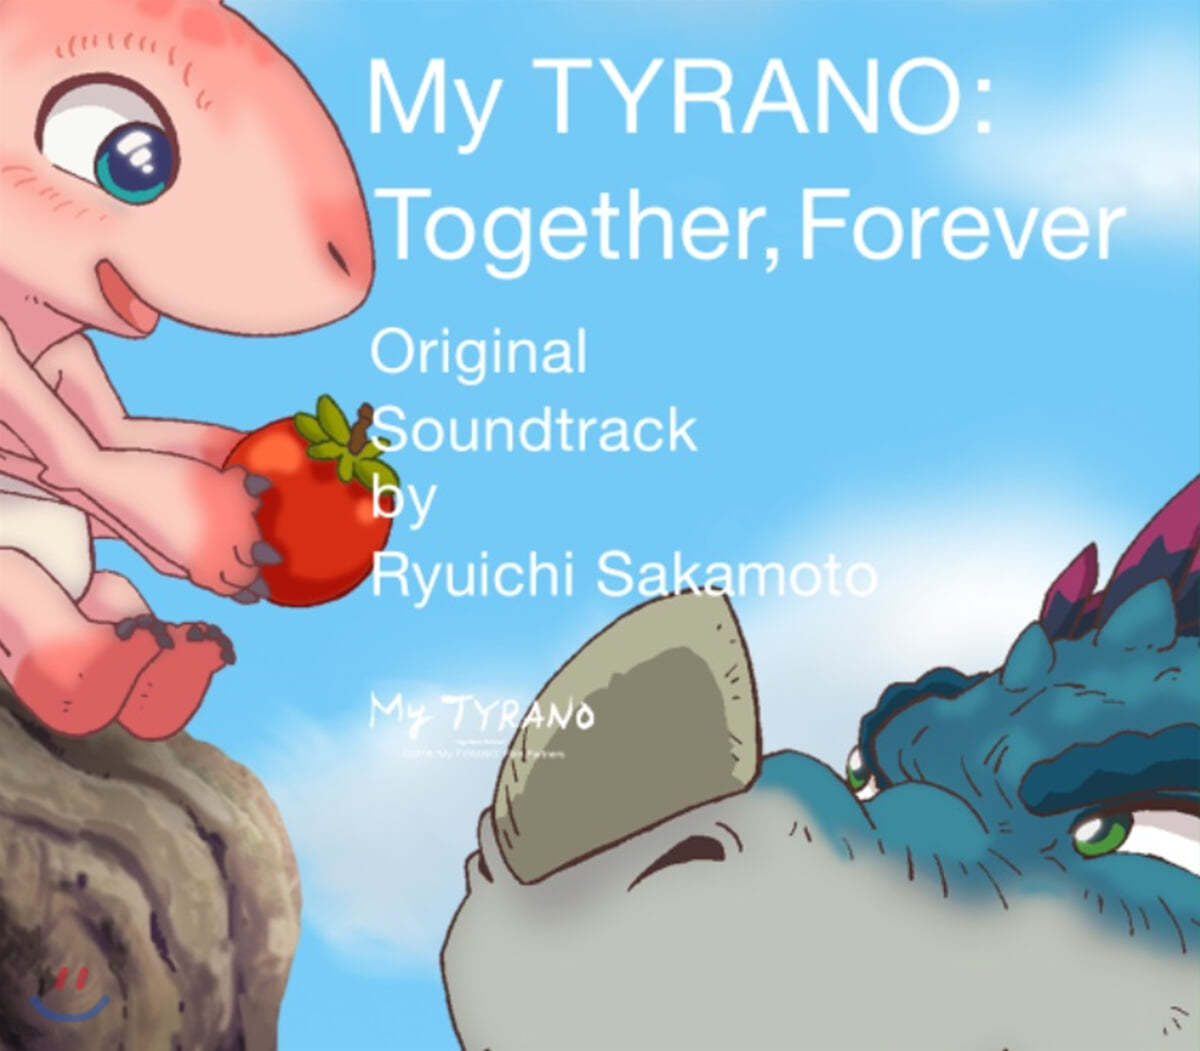 안녕, 티라노: 영원히, 함께 영화음악 (My TYRANO: Together, Forever OST by Ryuichi Sakamoto 류이치 사카모토)